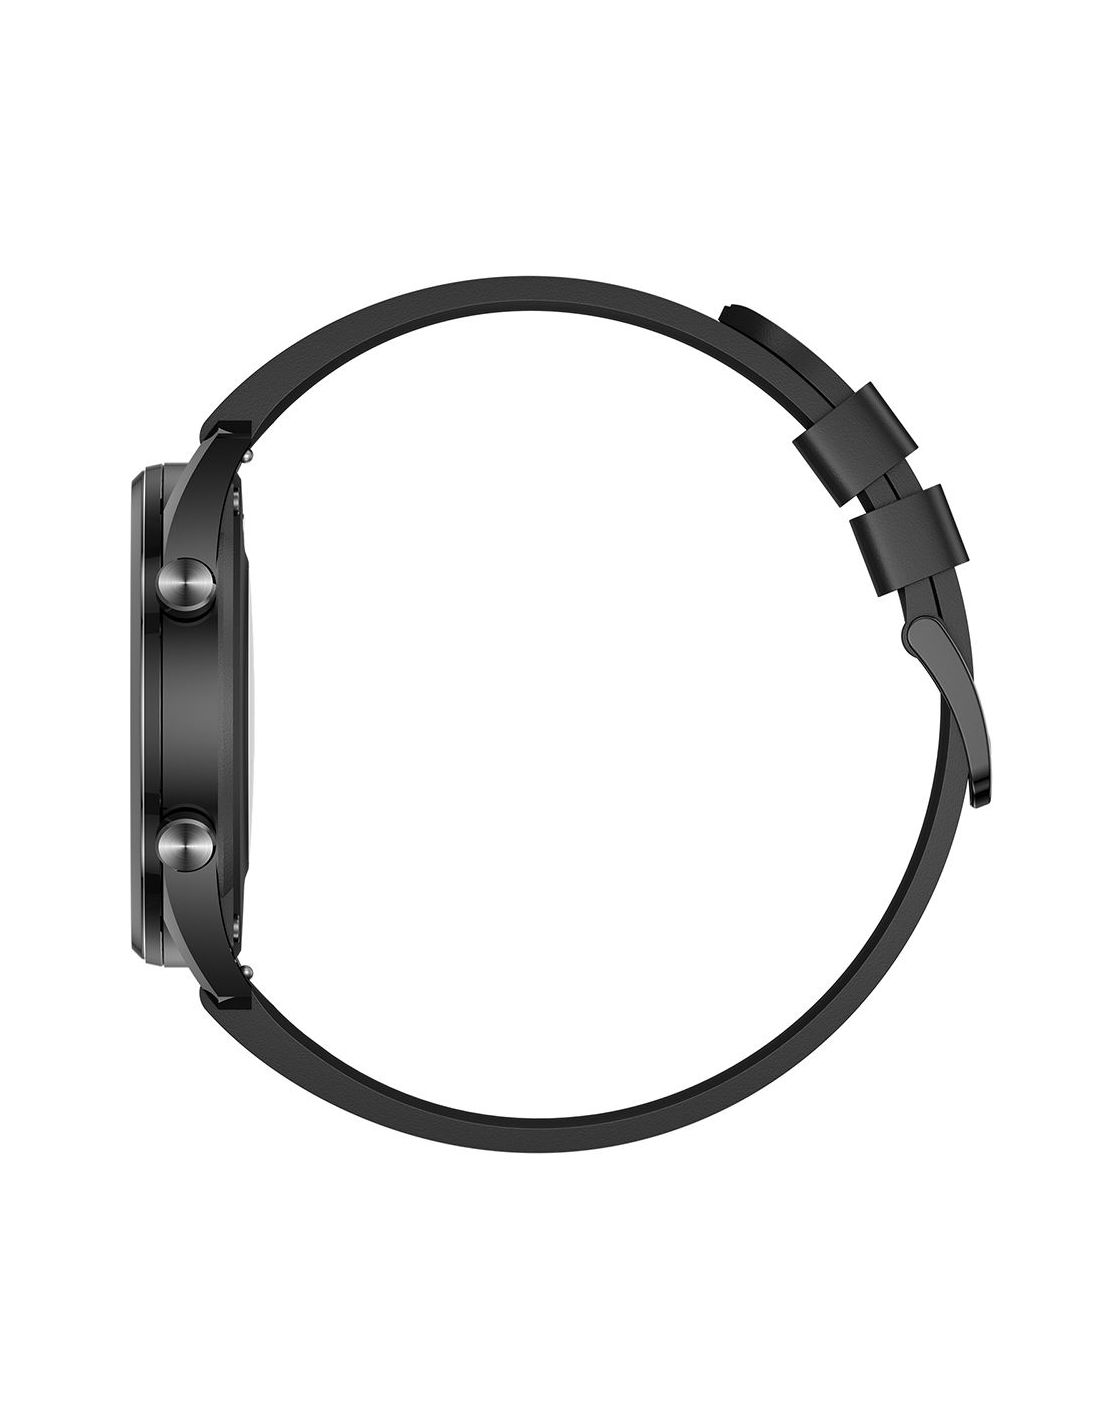 Reloj Smartwatch Xiaomi Imilab W12 Negro